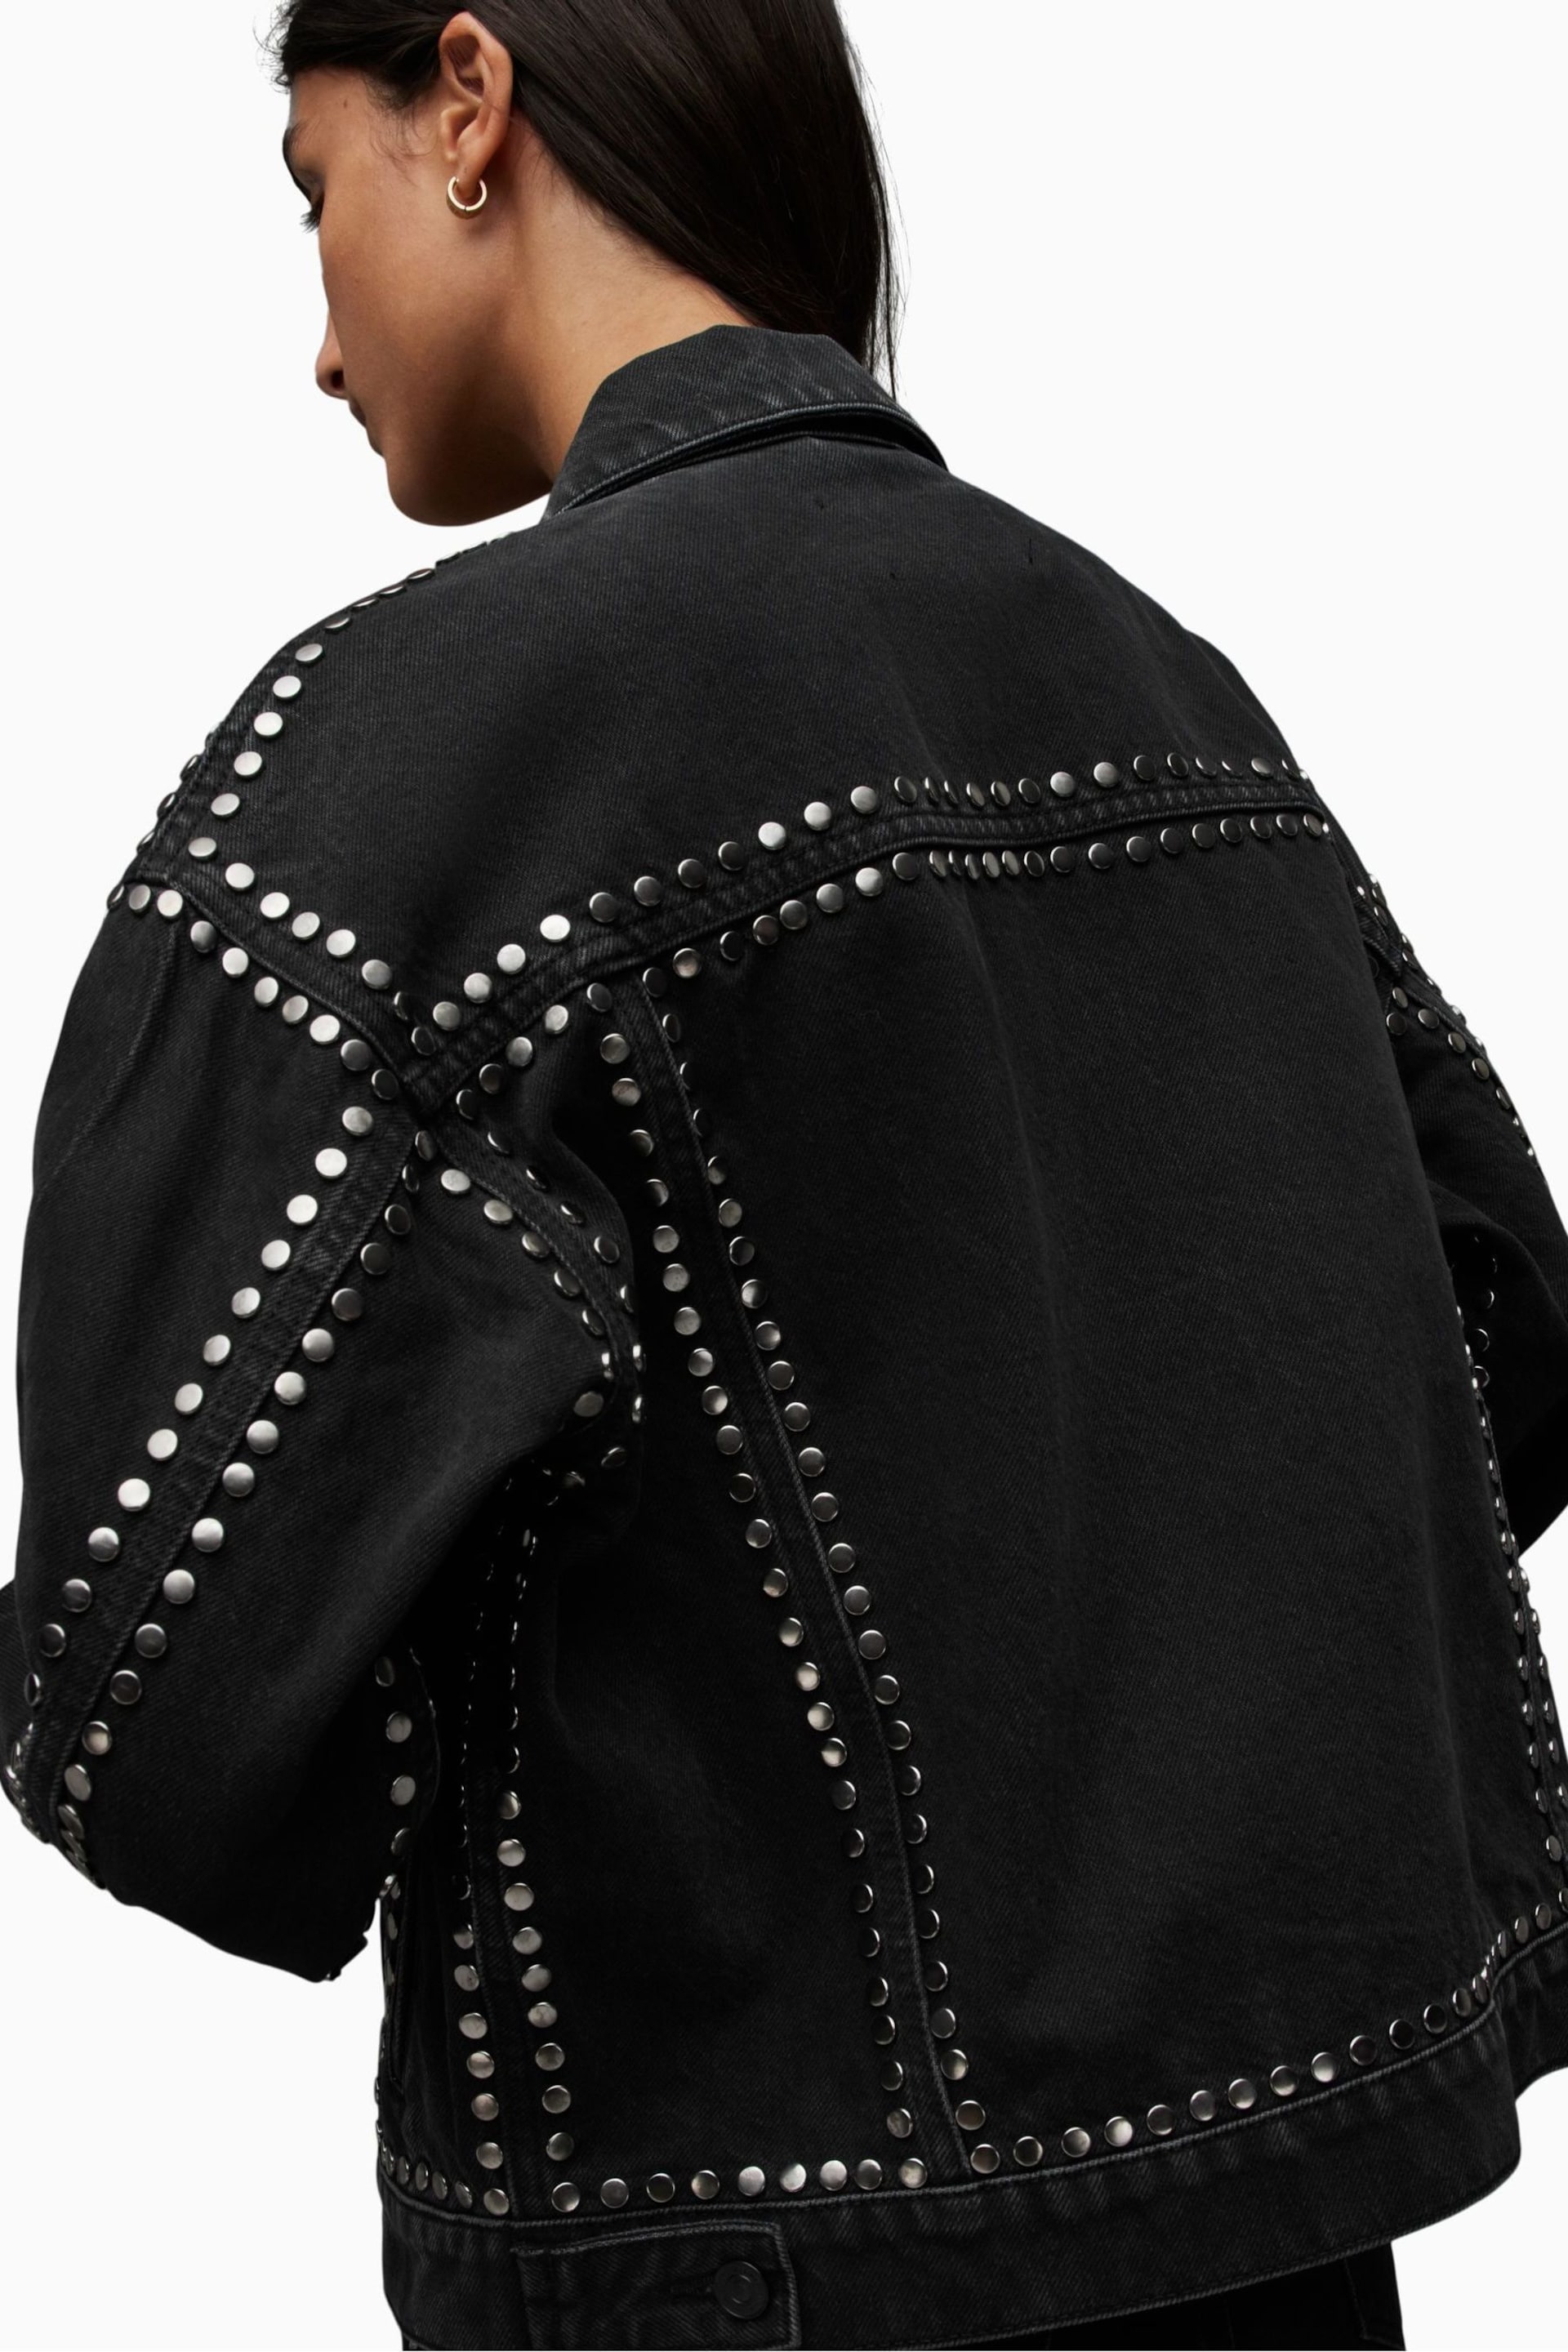 AllSaints Black Bella Stud Denim Jacket - Image 7 of 10